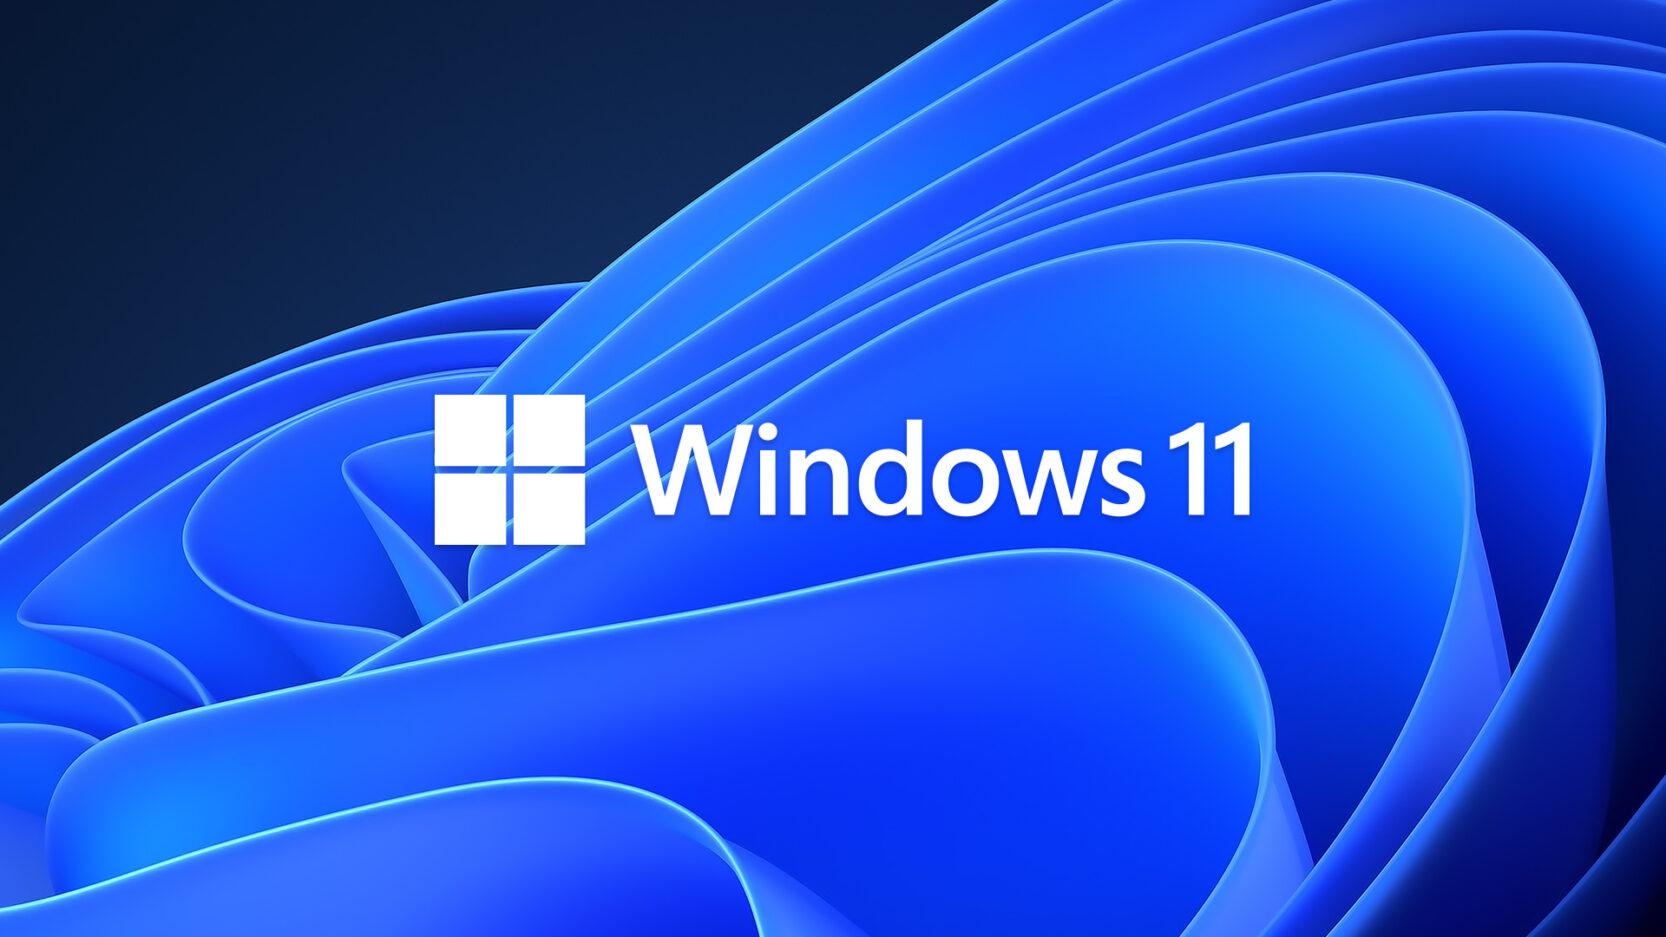 لقد وصلت أولى التحديثات الرسمية الجديدة إلى نظام Windows 11 الجديد!